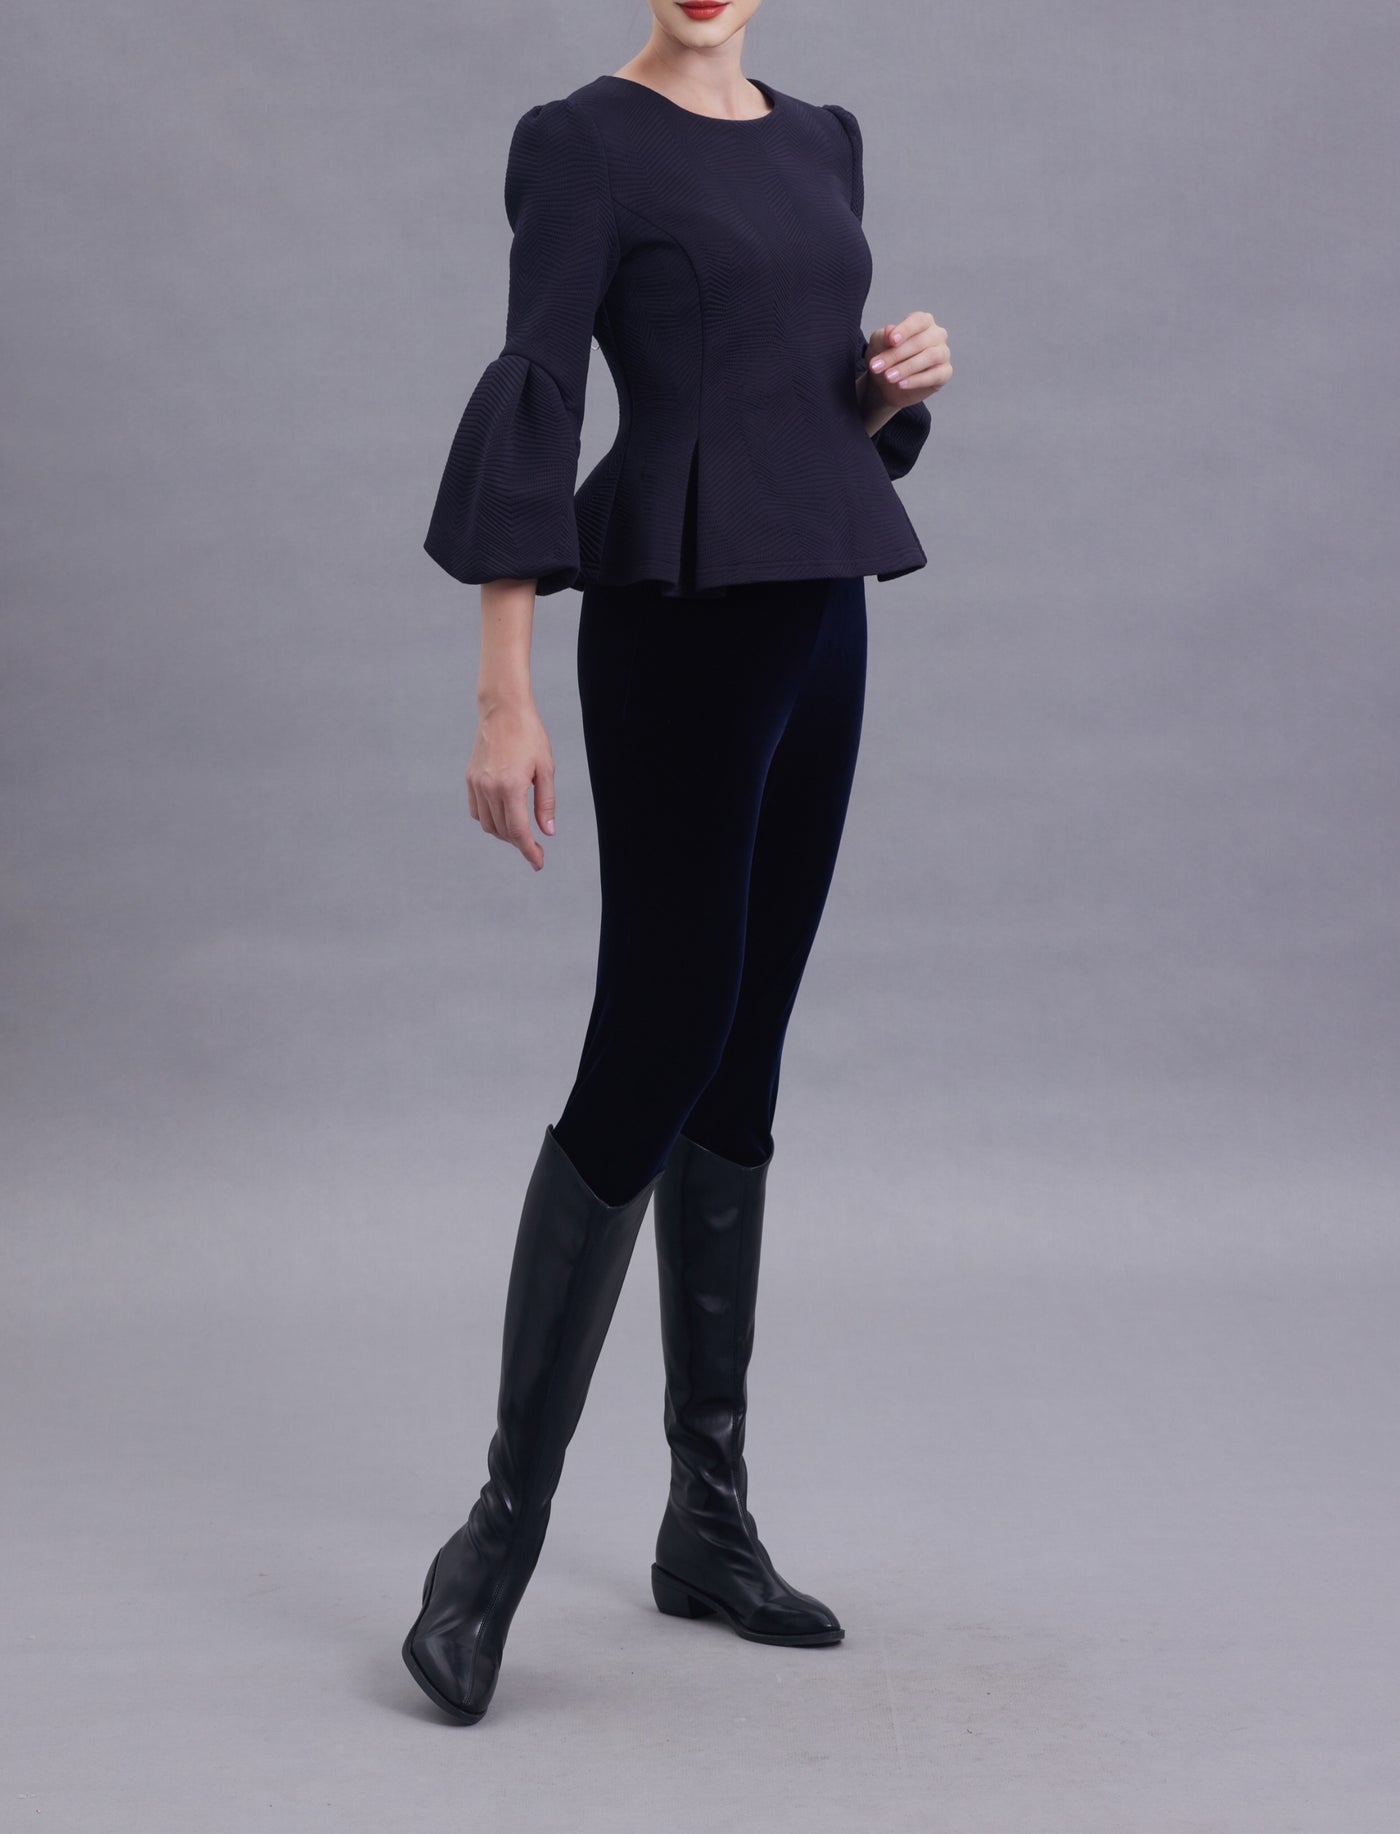 Irene Stretchy Velvet Skinny Legging  - Luxurious, Fun & Multifunctional